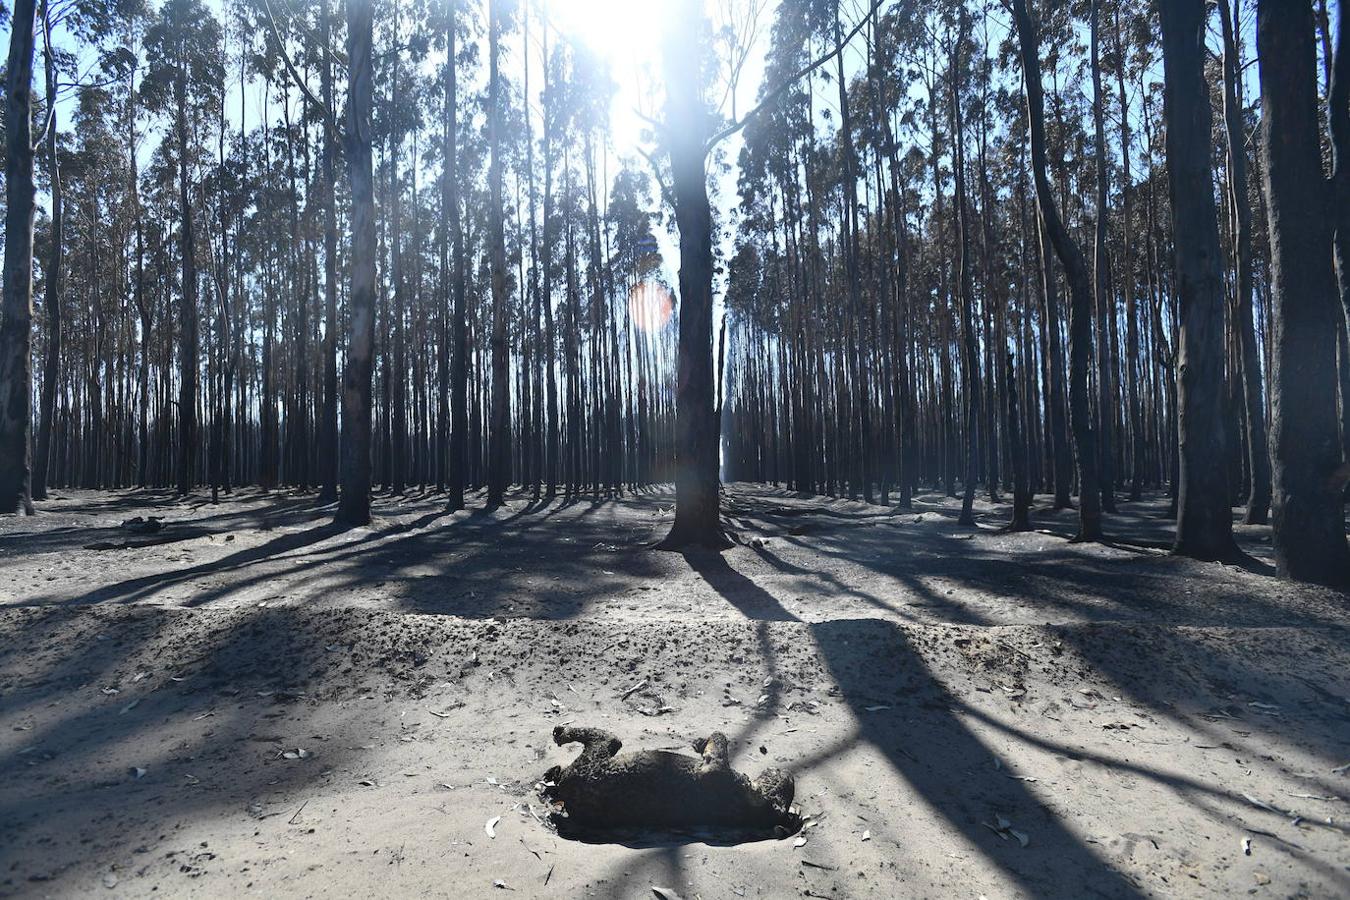 Los incendios forestales que están devastando Australia han matado a más de 1.000 millones de animales en todo el país, incluidos más de 800 millones de ejemplares en el estado de Nueva Gales del Sur, el más afectado por las llamas. Entre las especies afectadas se encuentran algunas en peligro de extinción, como la rana corroboree del sur o la cacatúa negra brillante. Australia se enfrenta cada primavera a incendios forestales, pero este año han sido mucho más tempranos y virulentos, debido, entre otras cosas, a condiciones más favorables a las llamas provocadas por el calentamiento global. Los humos emitidos por las llamas se han detectado hasta Argentina y Brasil, a más de 12.000 km del otro lado del Pacífico, según las agencias meteorológicas de estos países. 